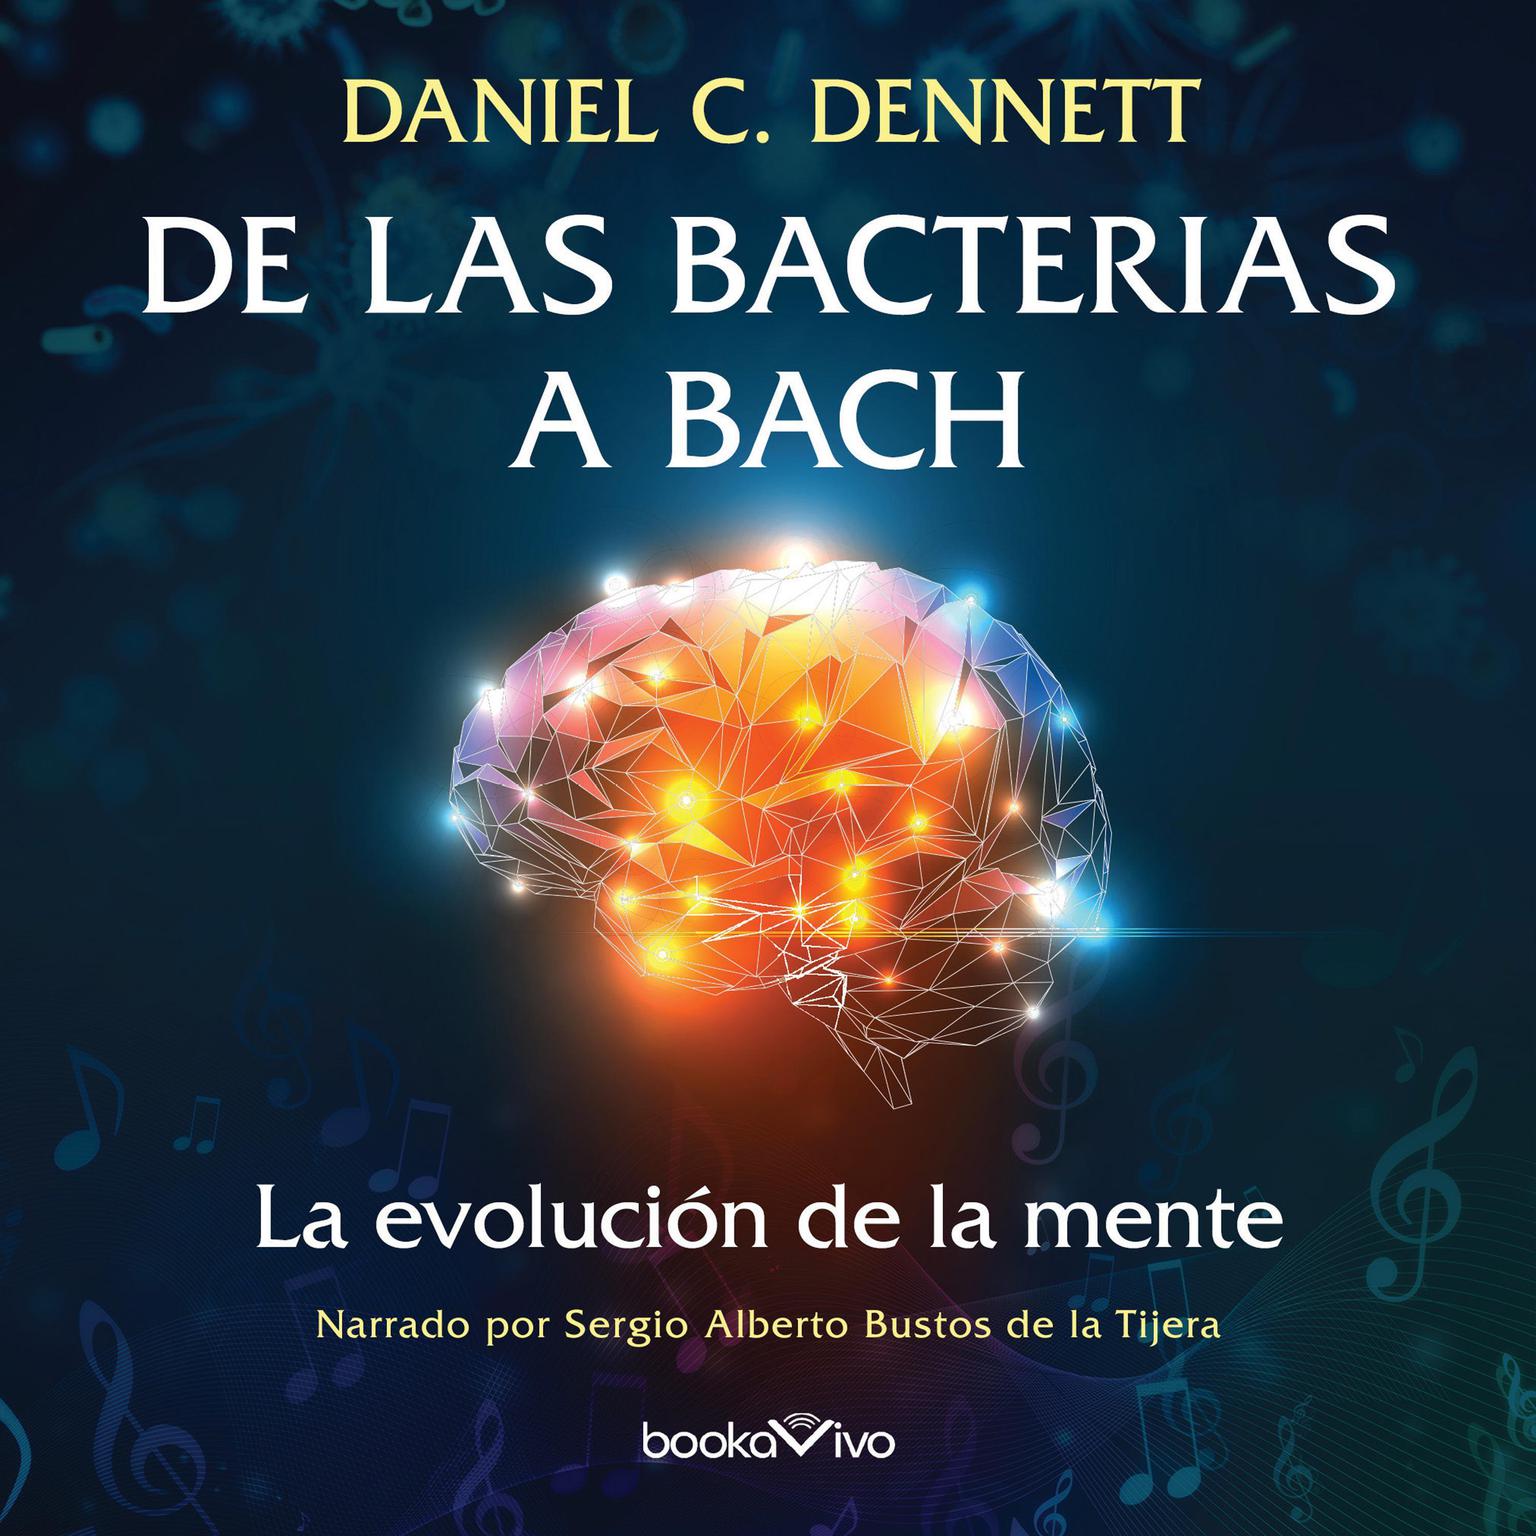 De las Bacterias a Bach (From Bacteria to Bach and Back): La Evolucion de la Mente (The Evolution of Minds) Audiobook, by Daniel C. Dennett